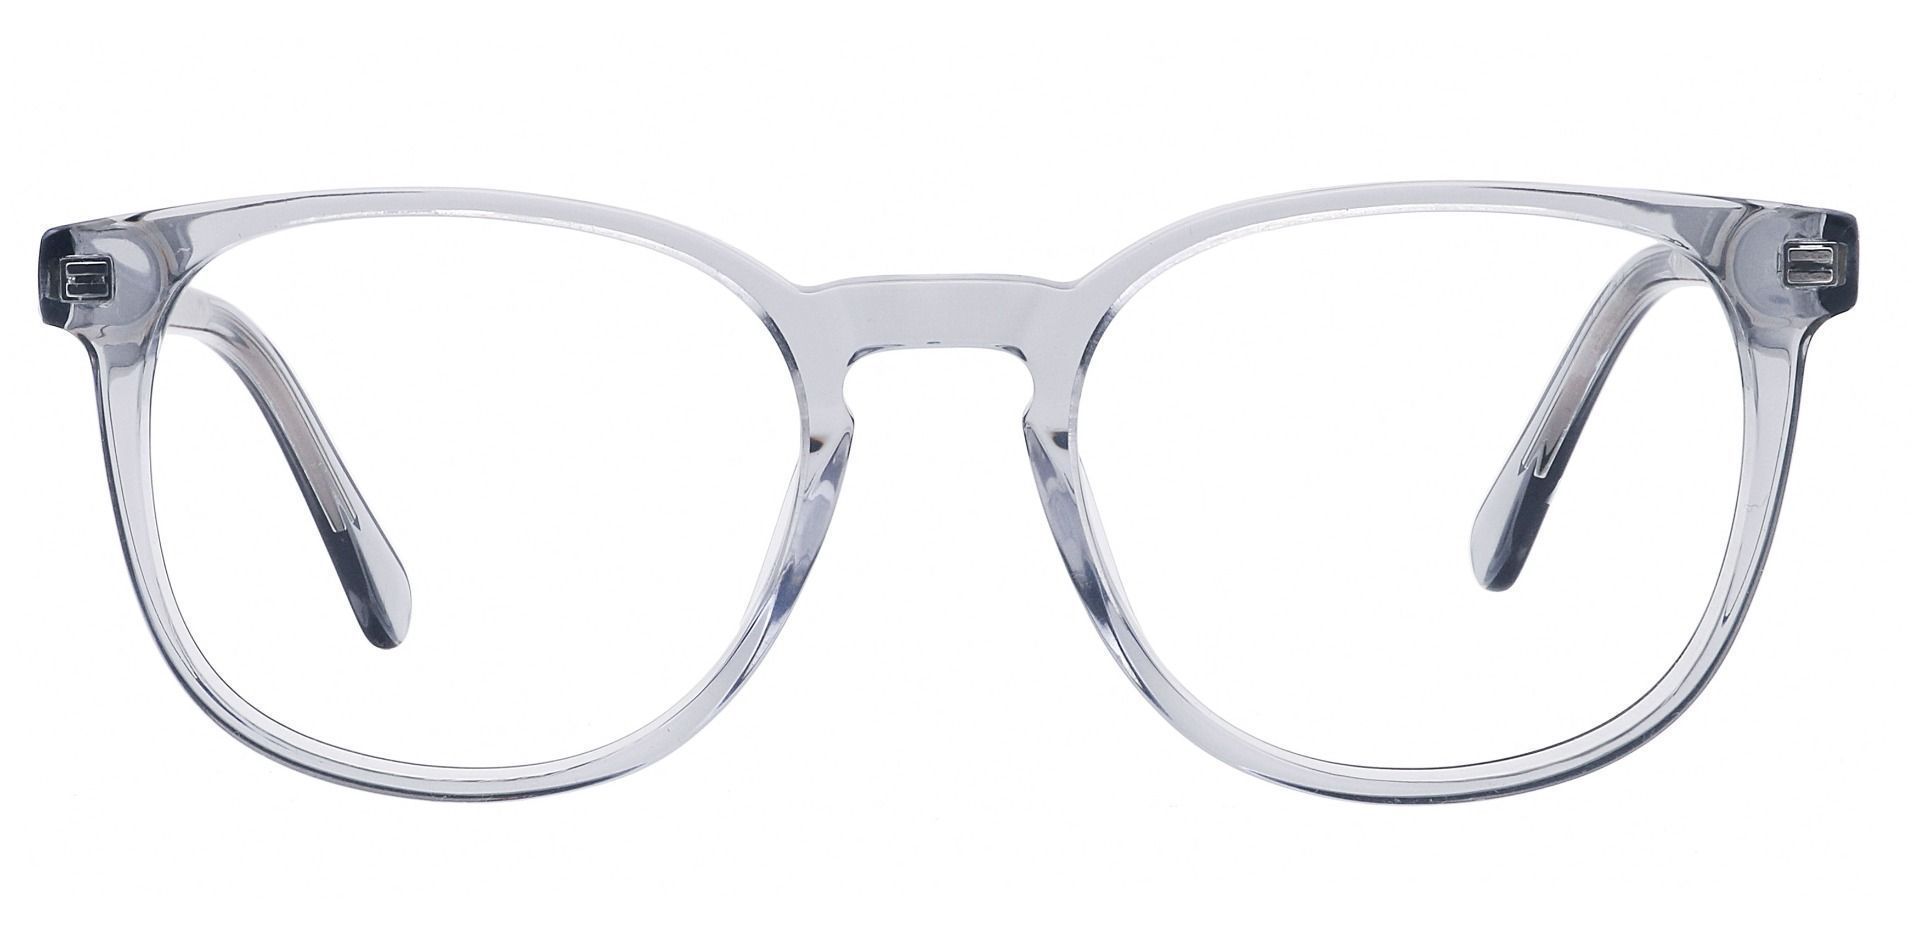 Nebula Round Prescription Glasses - Gray